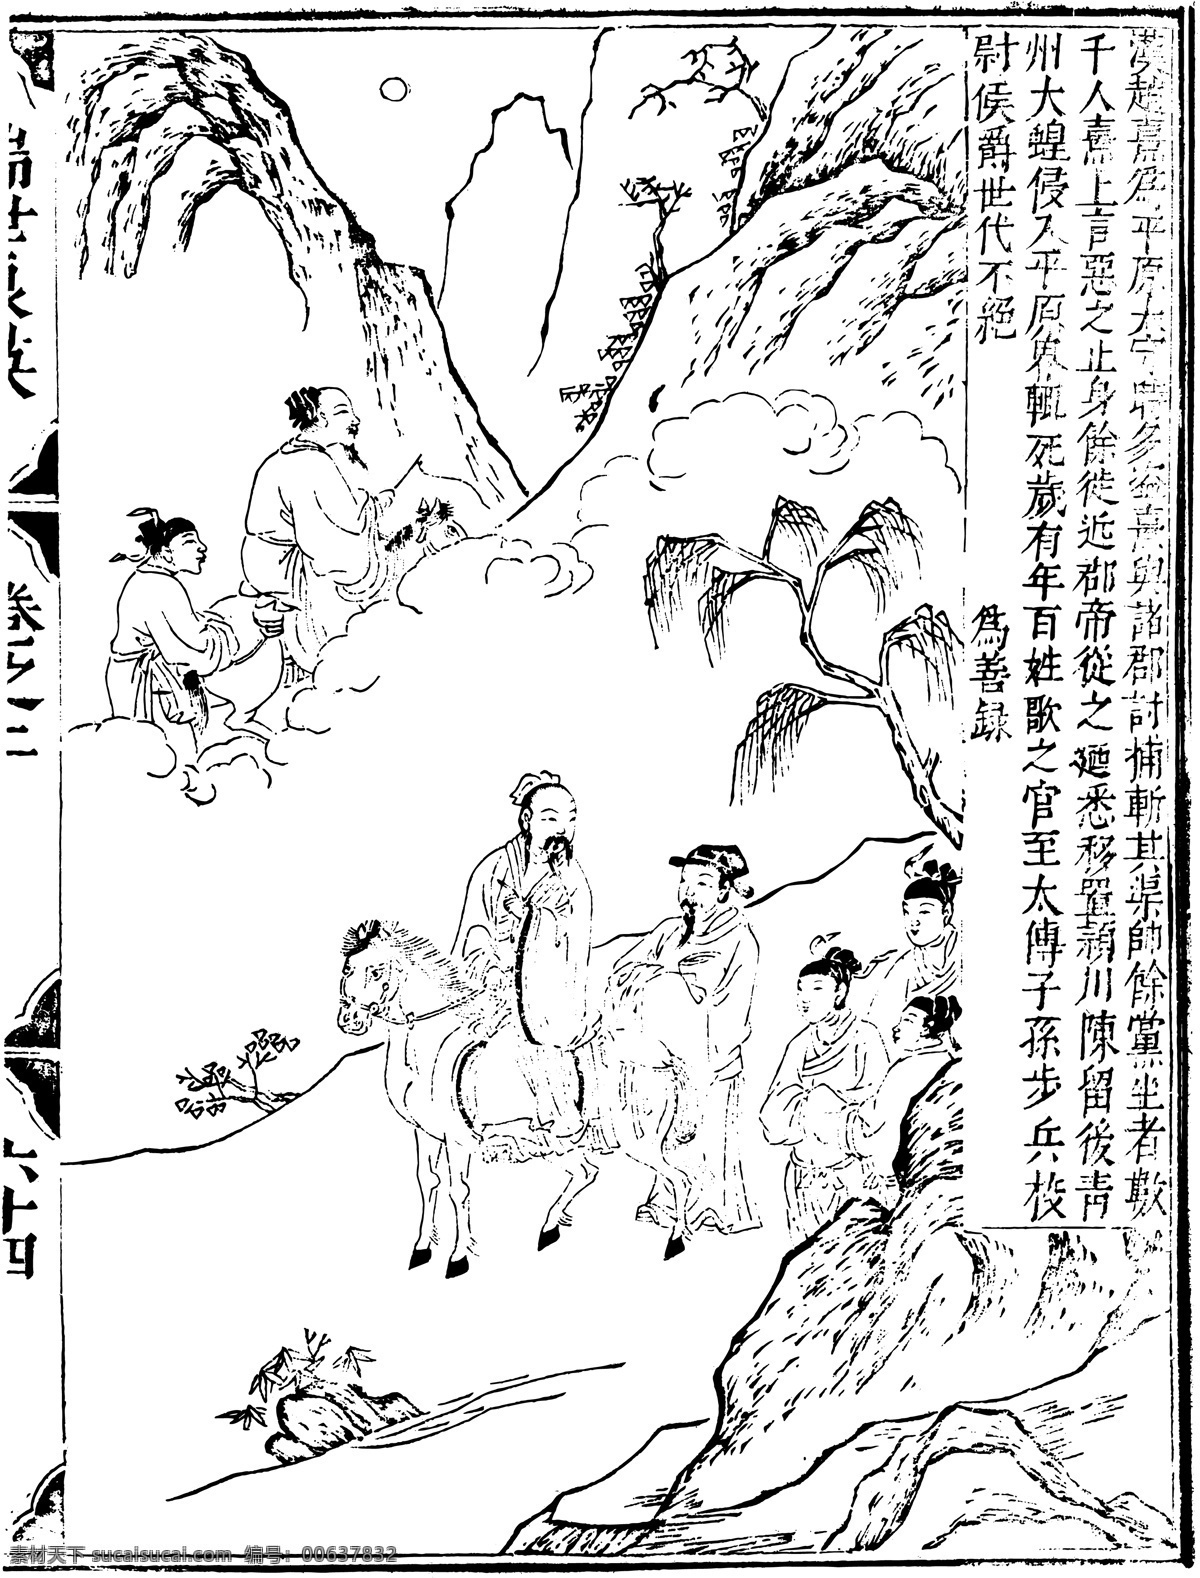 瑞世良英 木刻版画 中国 传统文化 38 中国传统文化 设计素材 版画世界 书画美术 白色